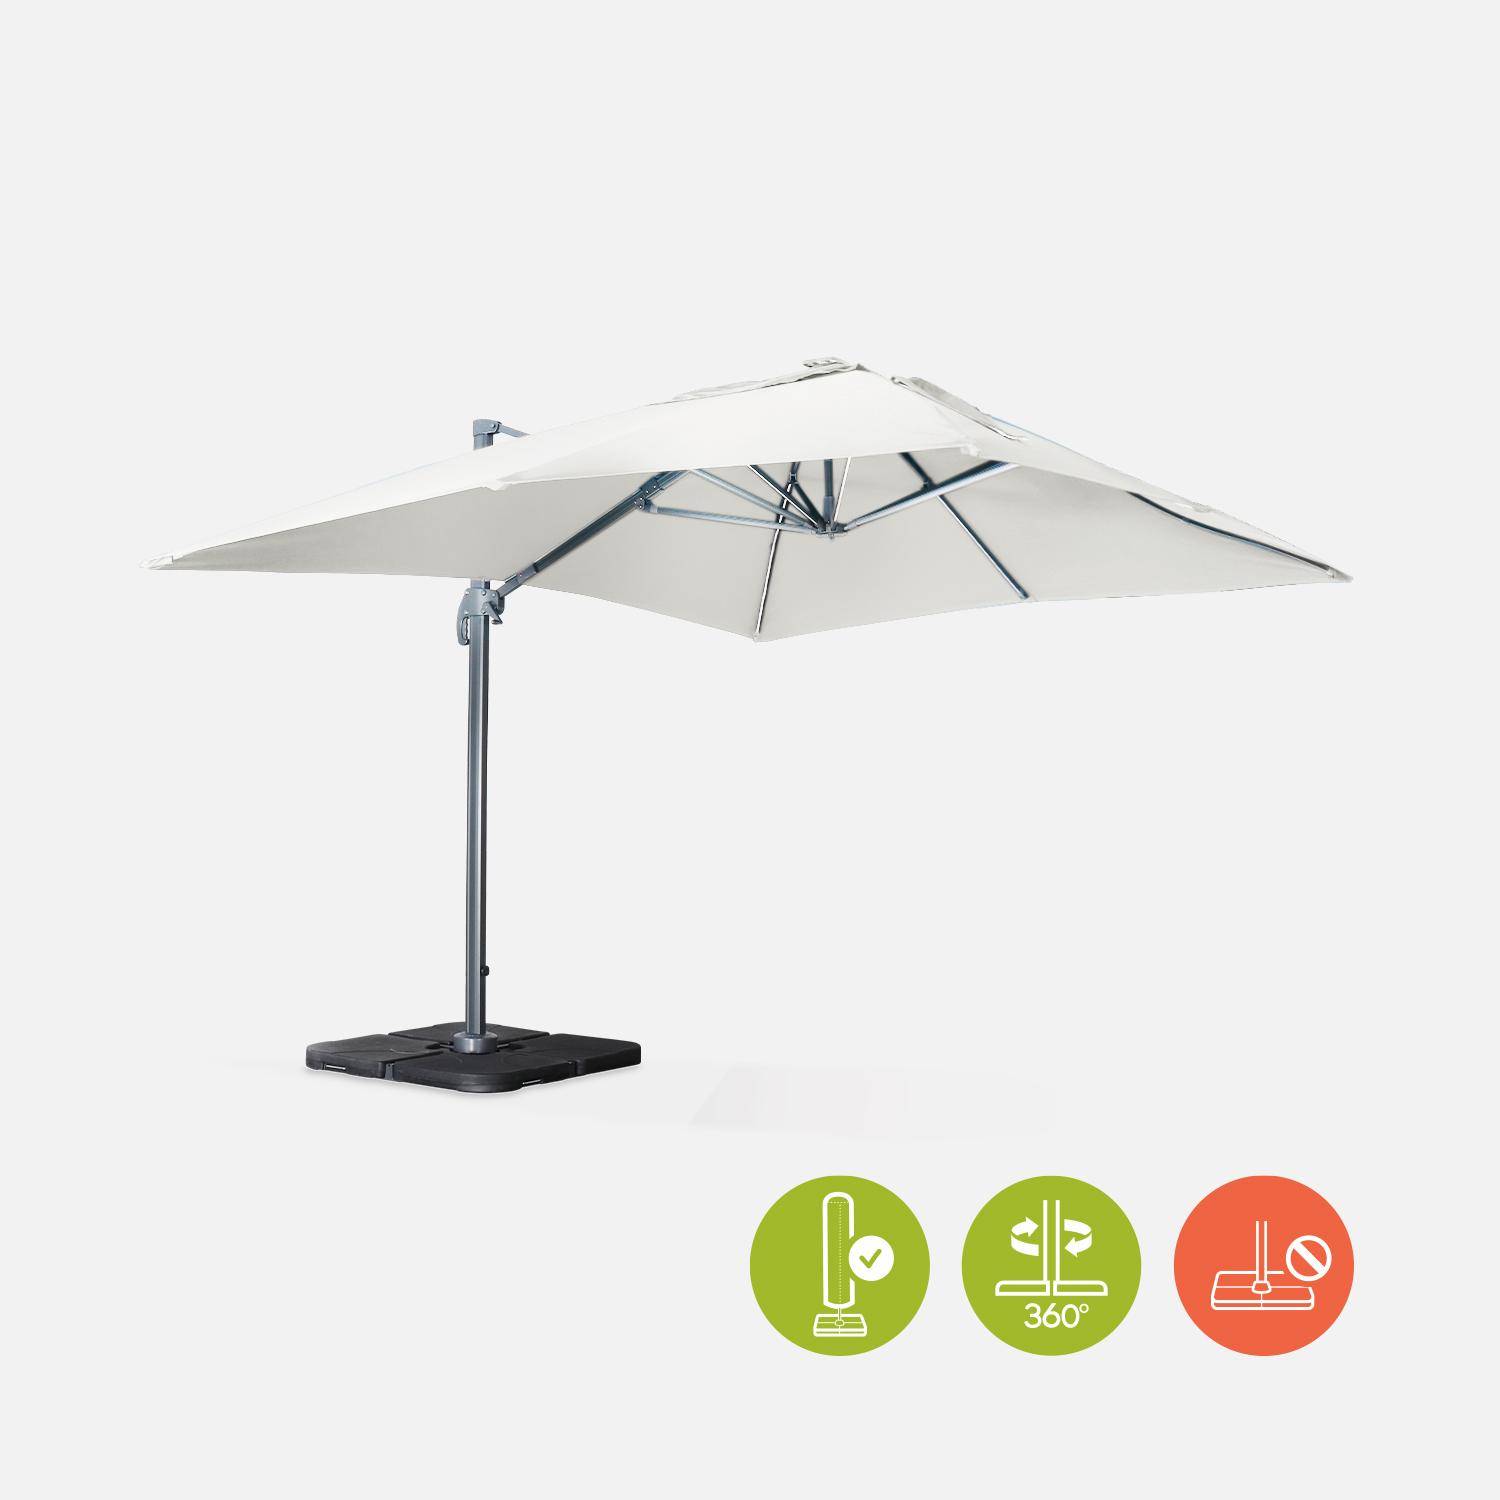 Luce, parasol déporté haut de gamme 3x4m Photo1